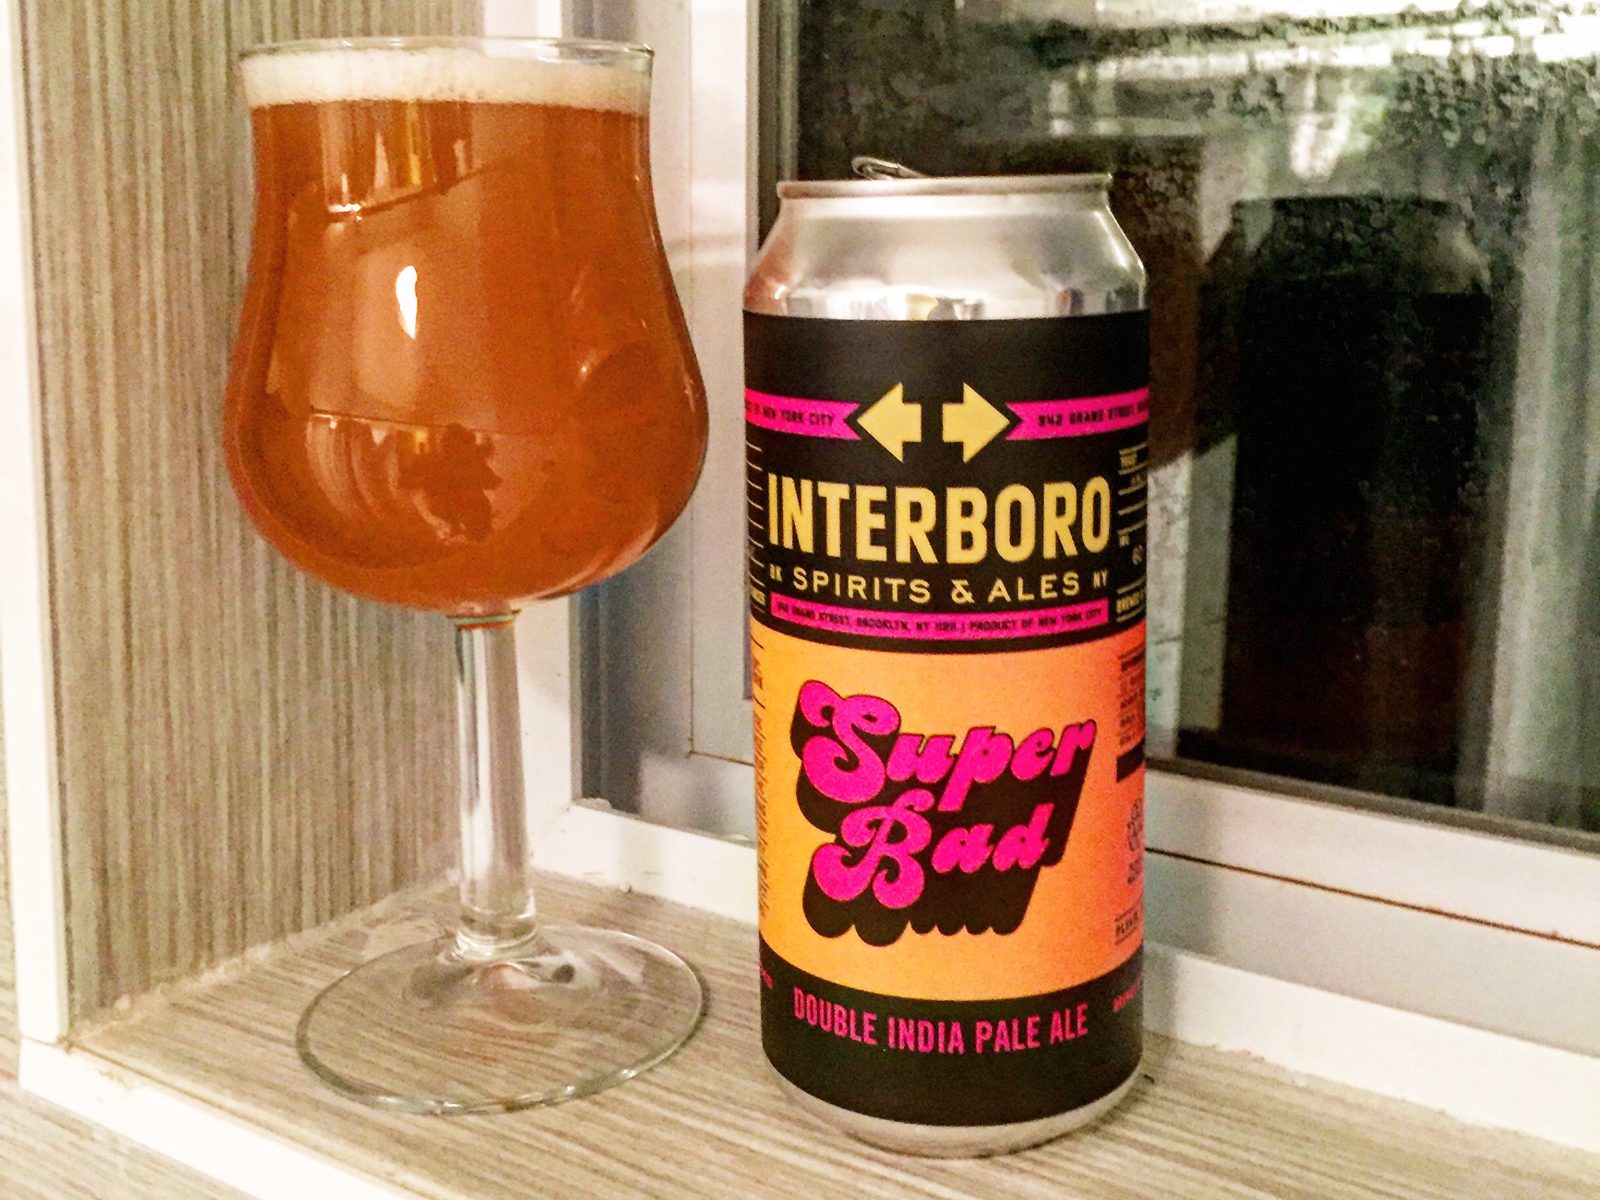 Interboro Spirits and Ales: Super Bad